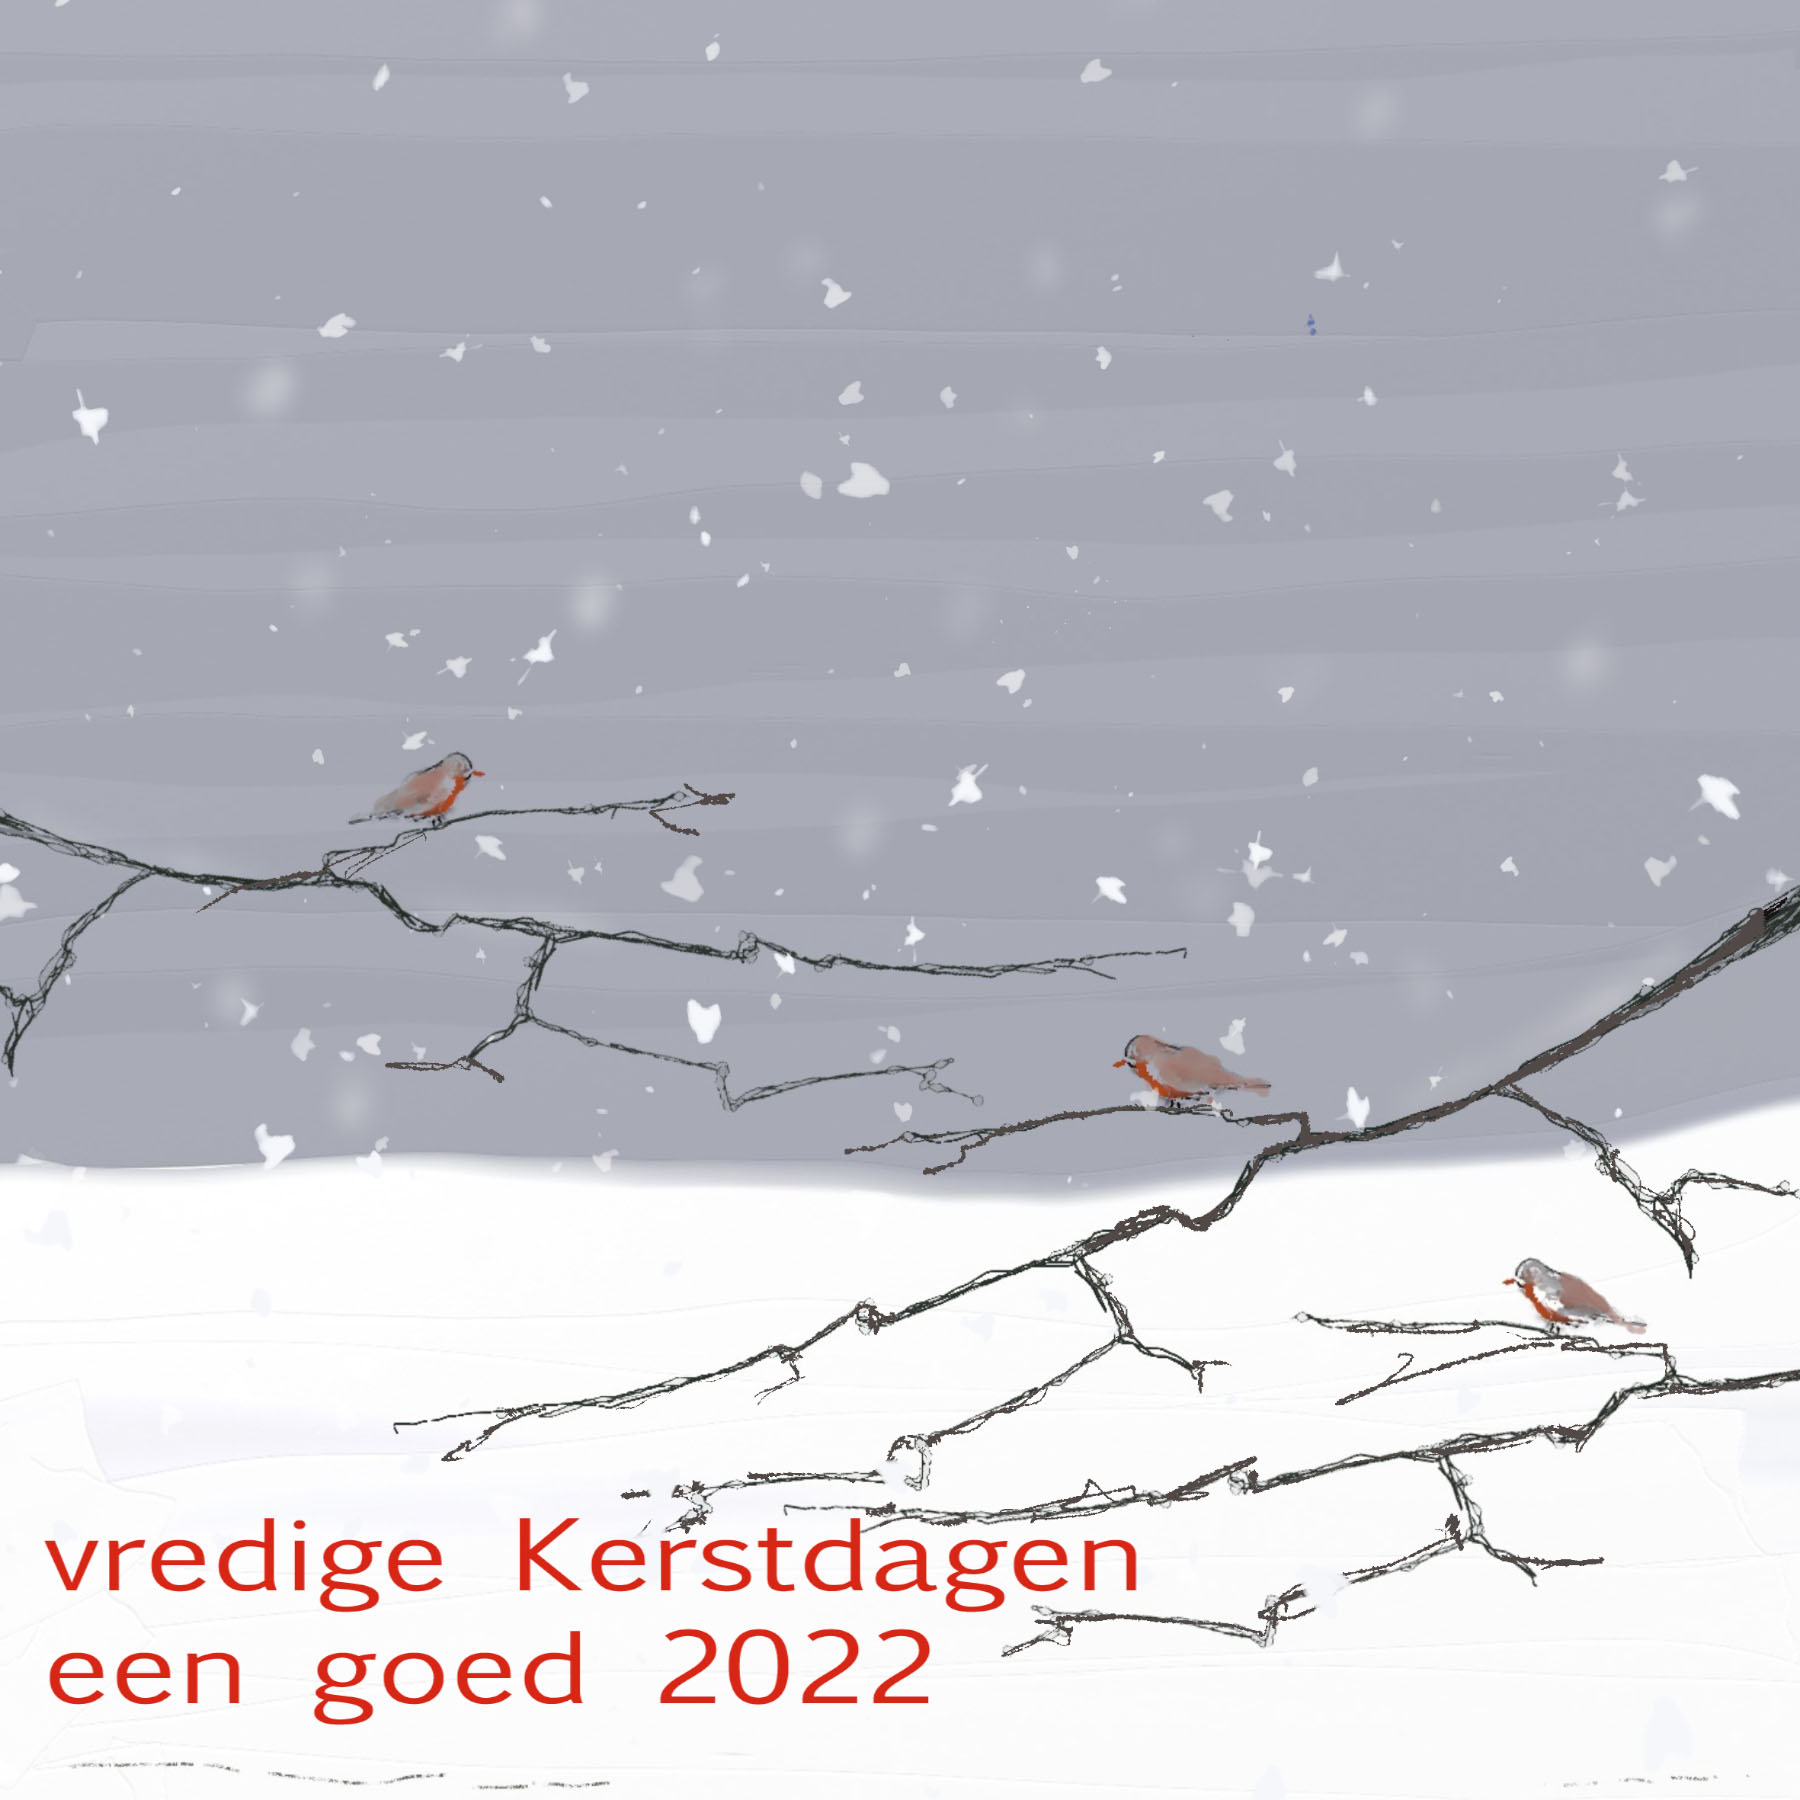 vredige kerstdagen een goed 2022 @ AnneRiet de Boer